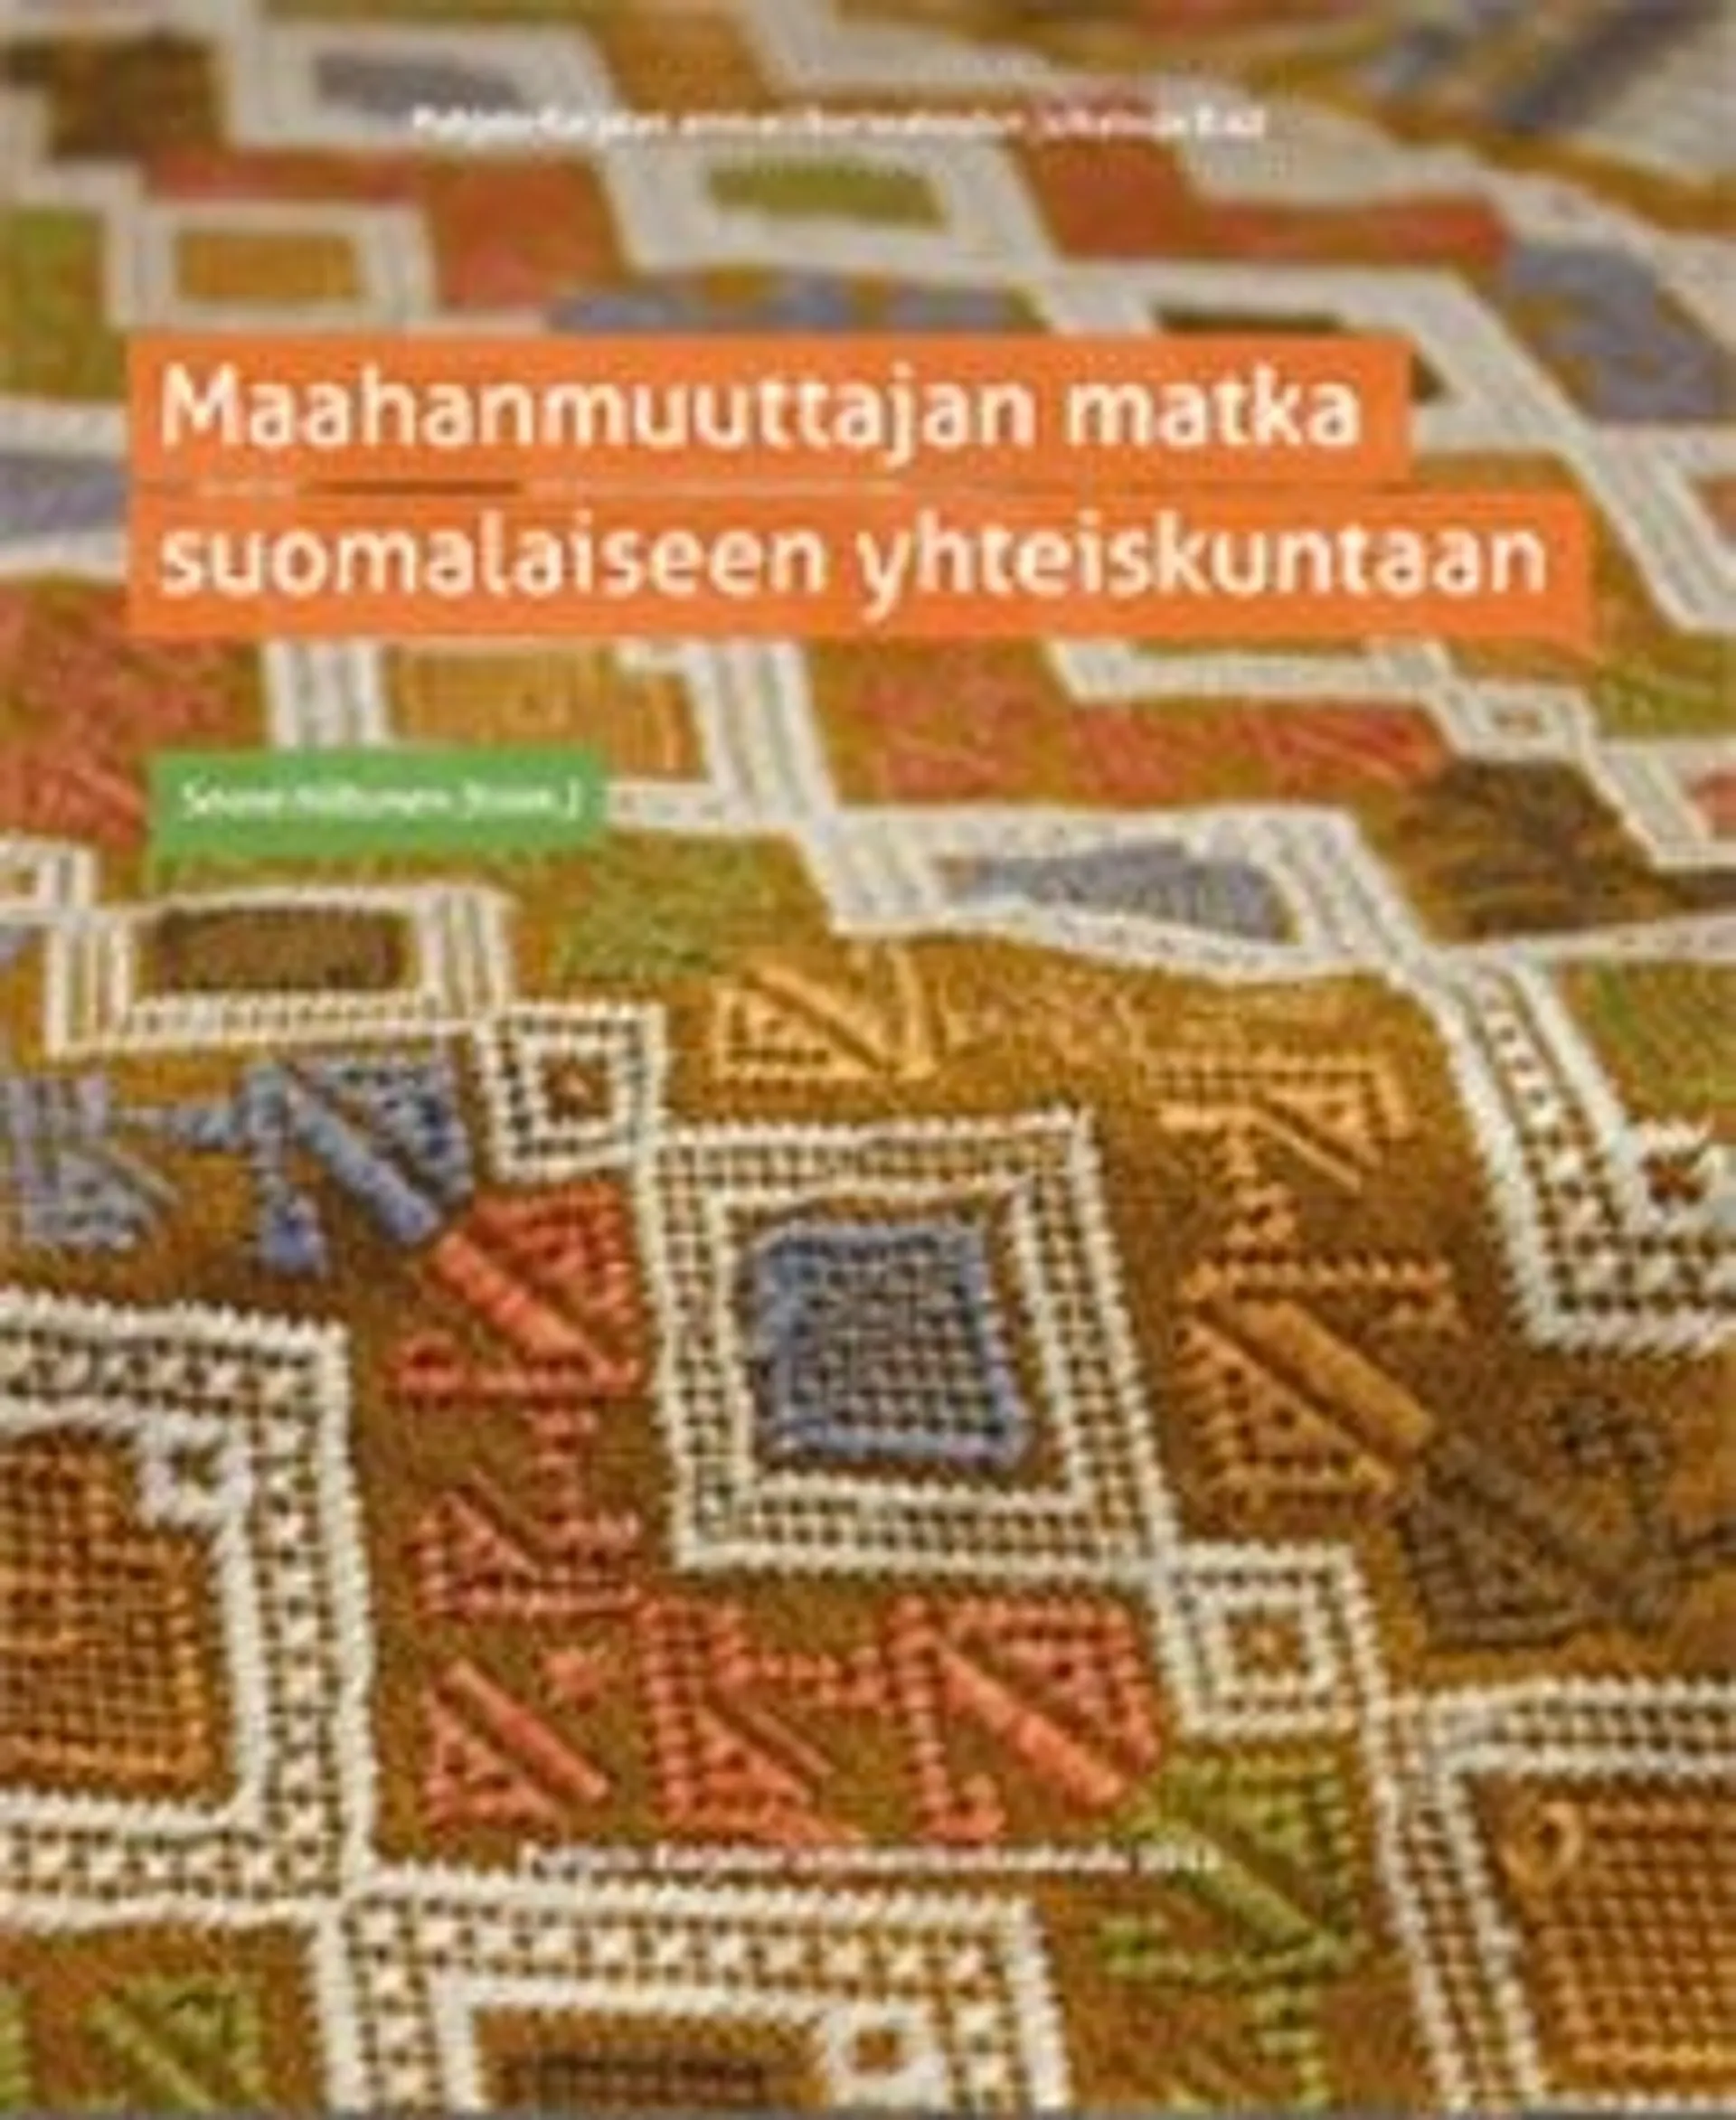 Maahanmuuttajan matka suomalaiseen yhteiskuntaan